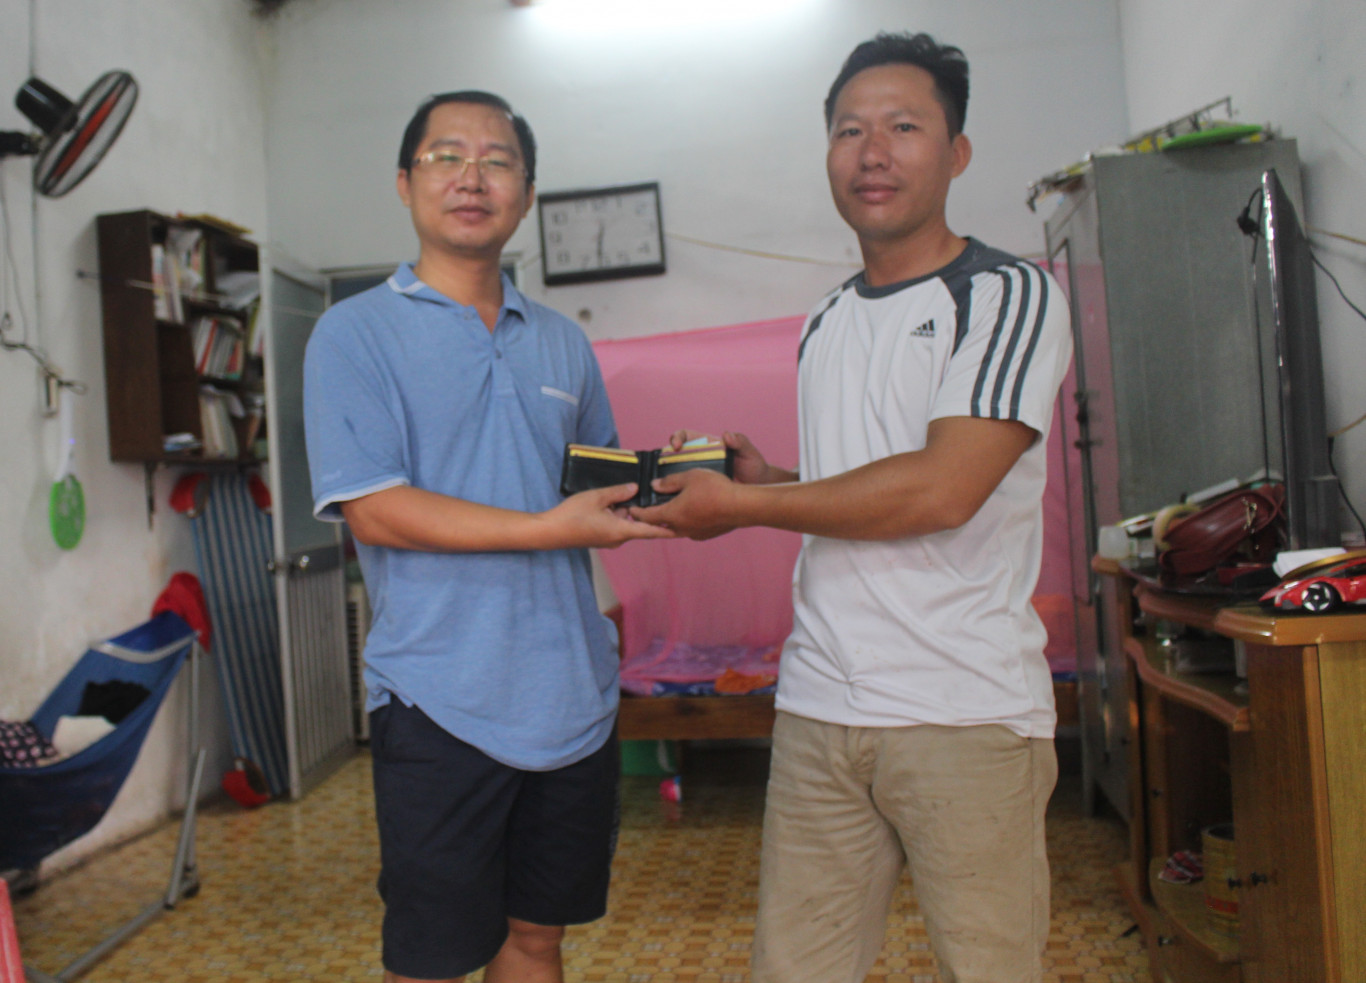 Anh Lê Văn Hiếu (người mặc ái mầu sọc đen trắng) trao trả lại cái bóp cho anh Nguyễn Thành Tâm